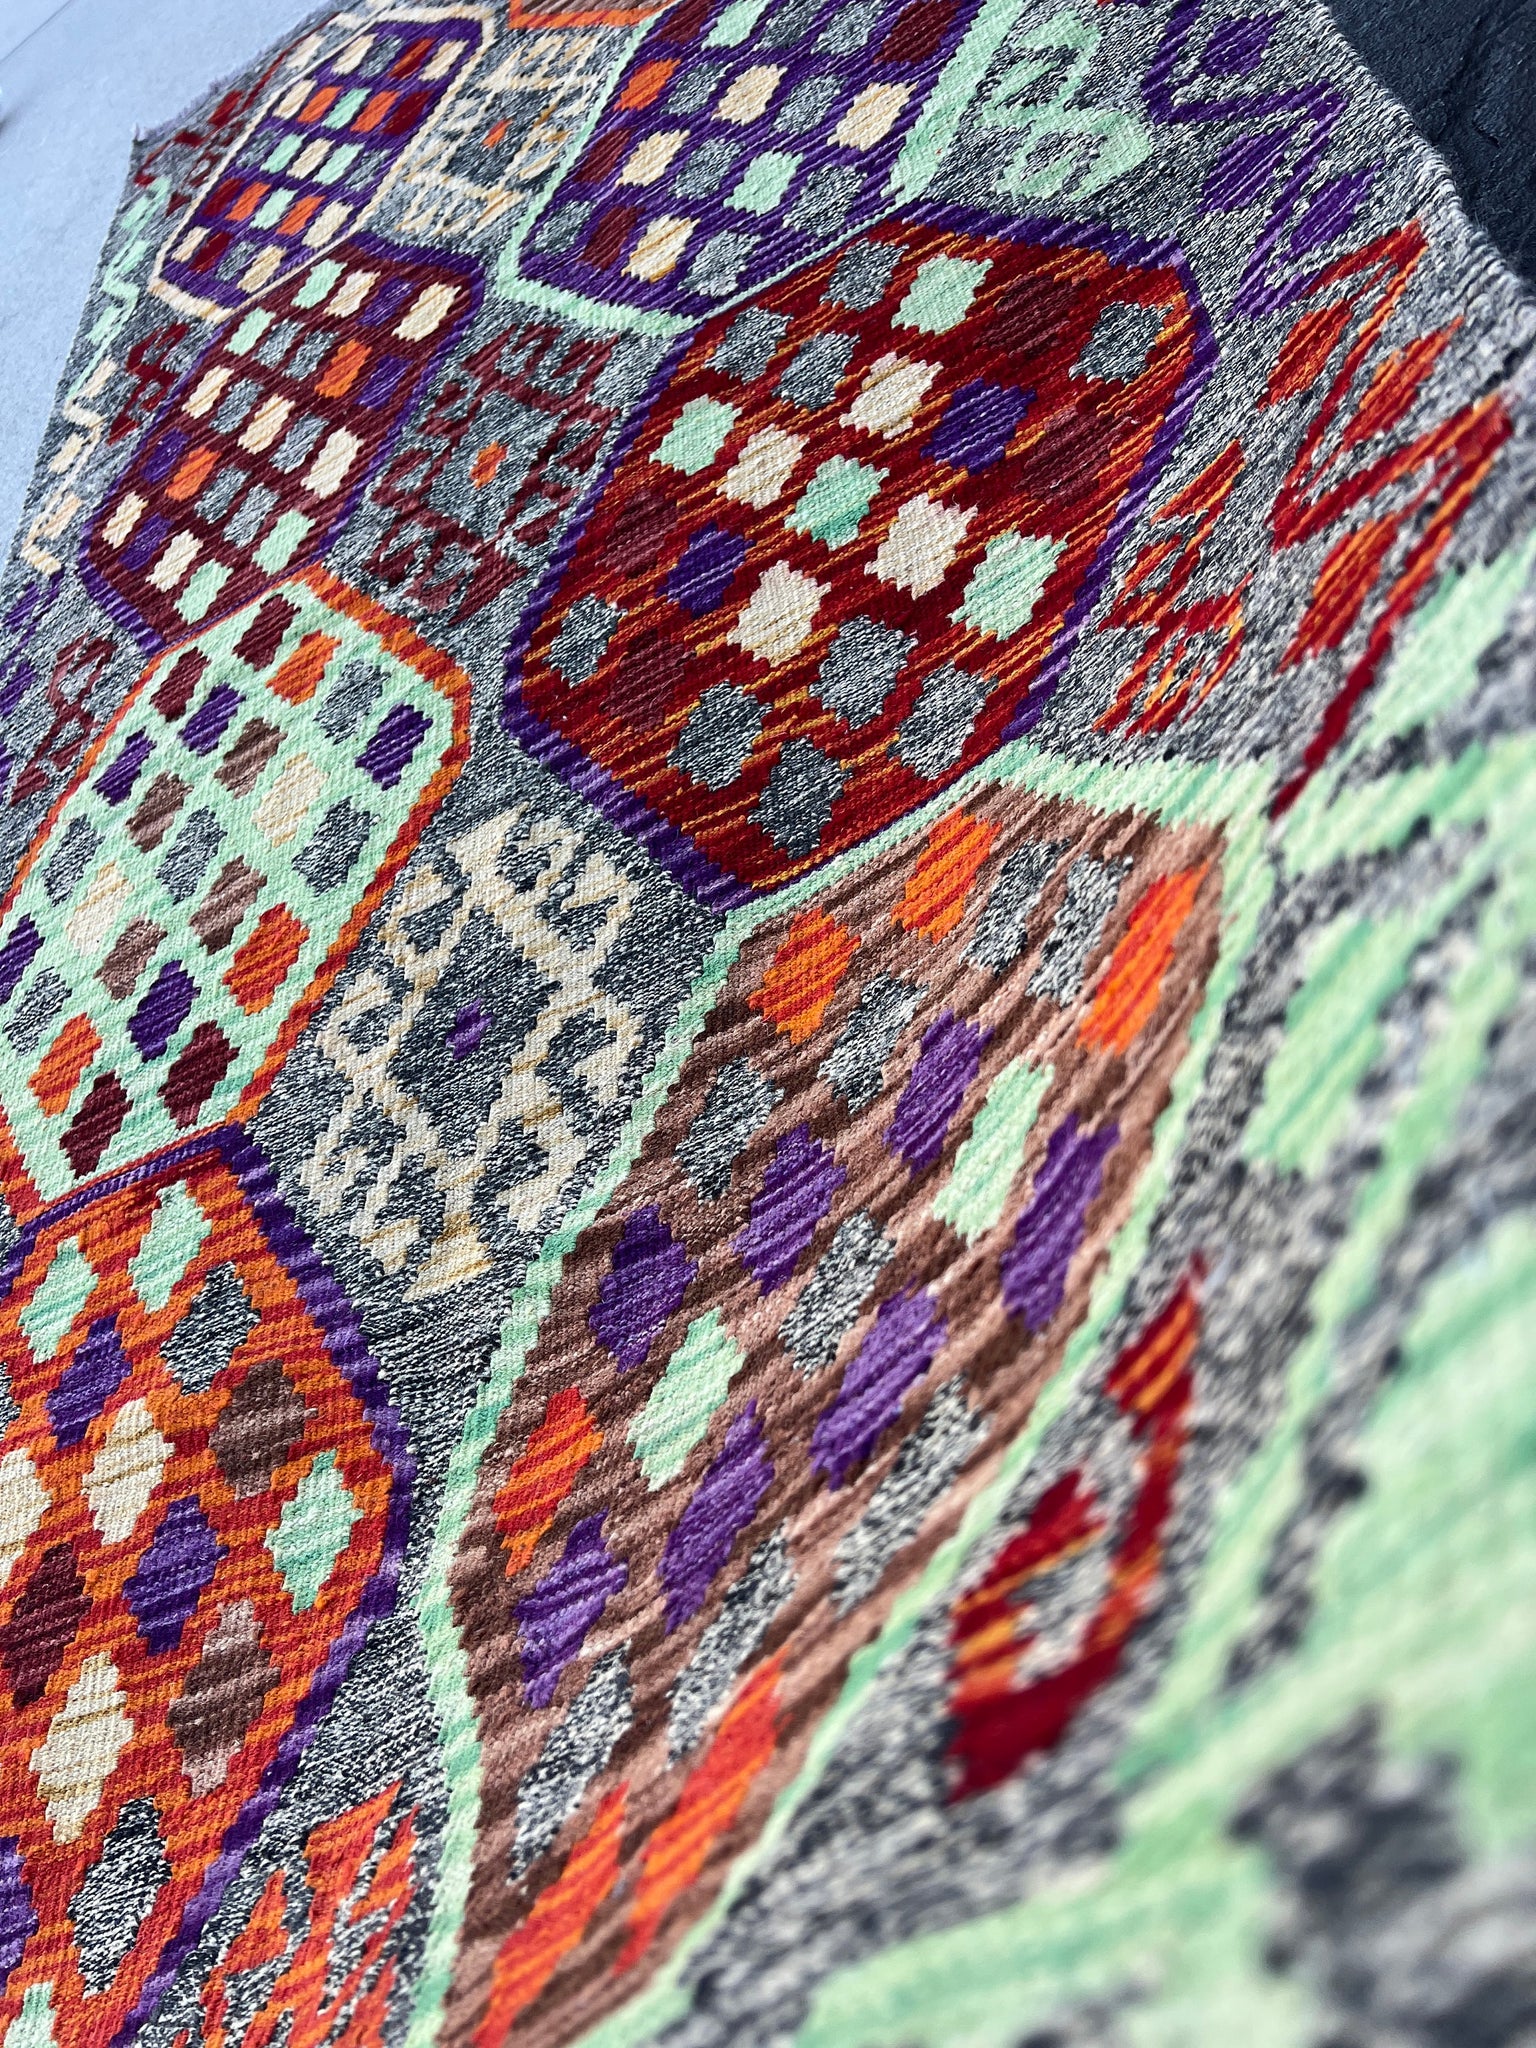 4x7 Handmade Afghan Kilim Rug | Grey Burnt Orange Red Mint Green Brown Purple Violet Brown Beige | Flatweave Bohemian Flatwoven Geometric